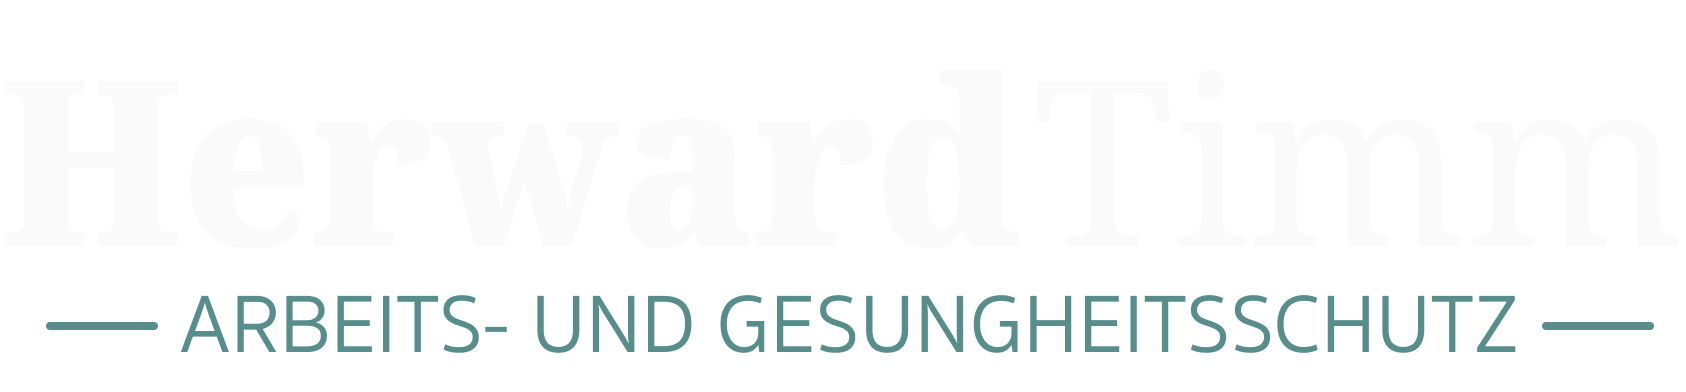 HerwardTimm_Logo_Weiß